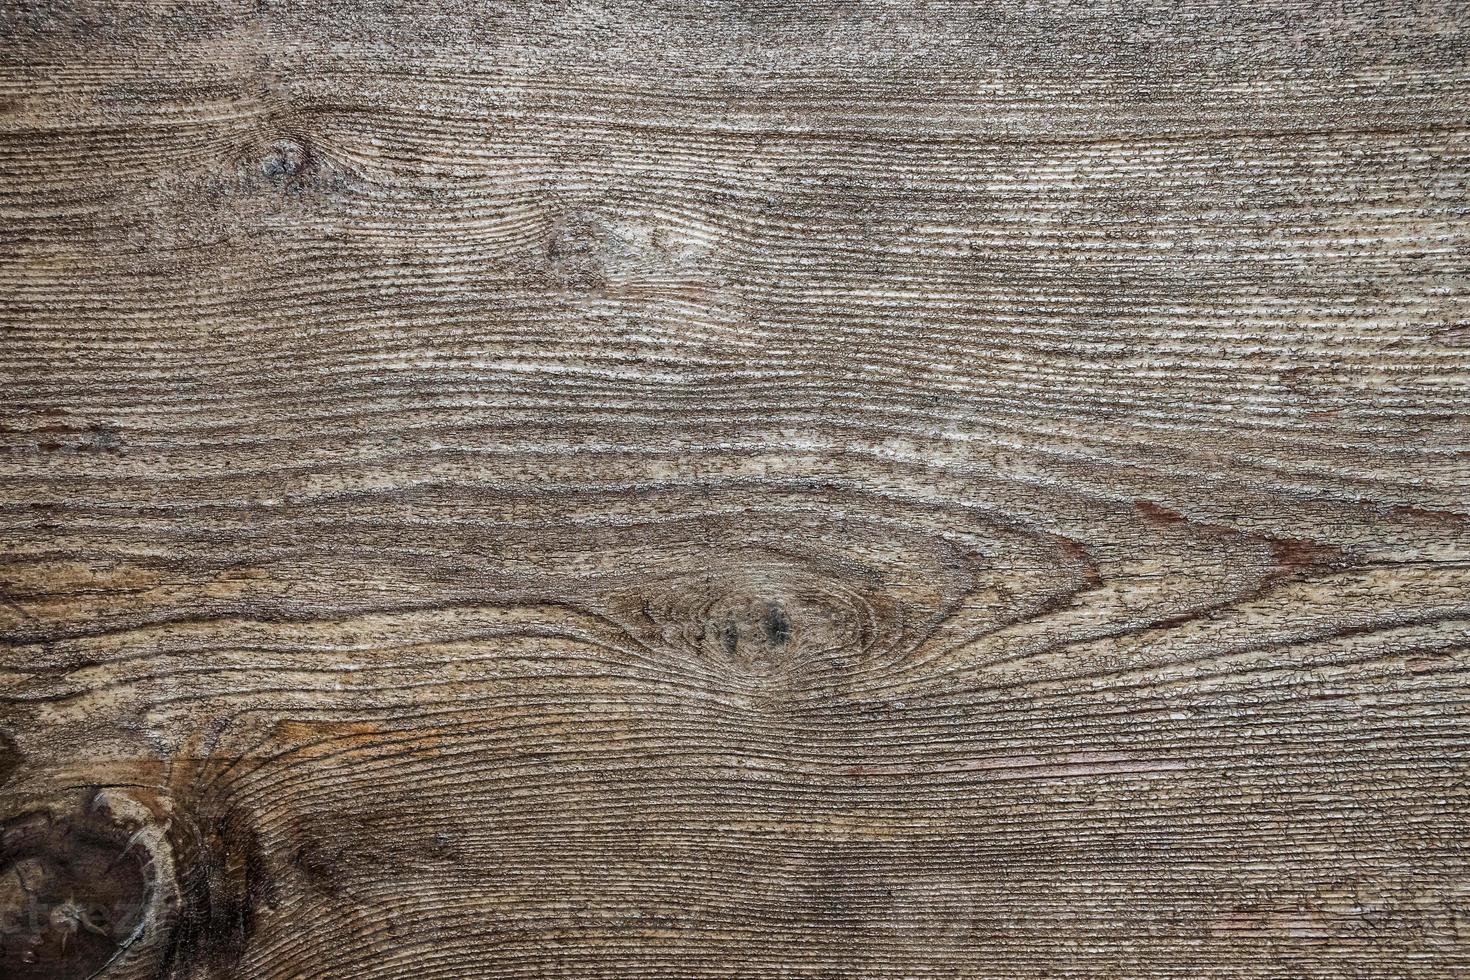 Texture du bois photo